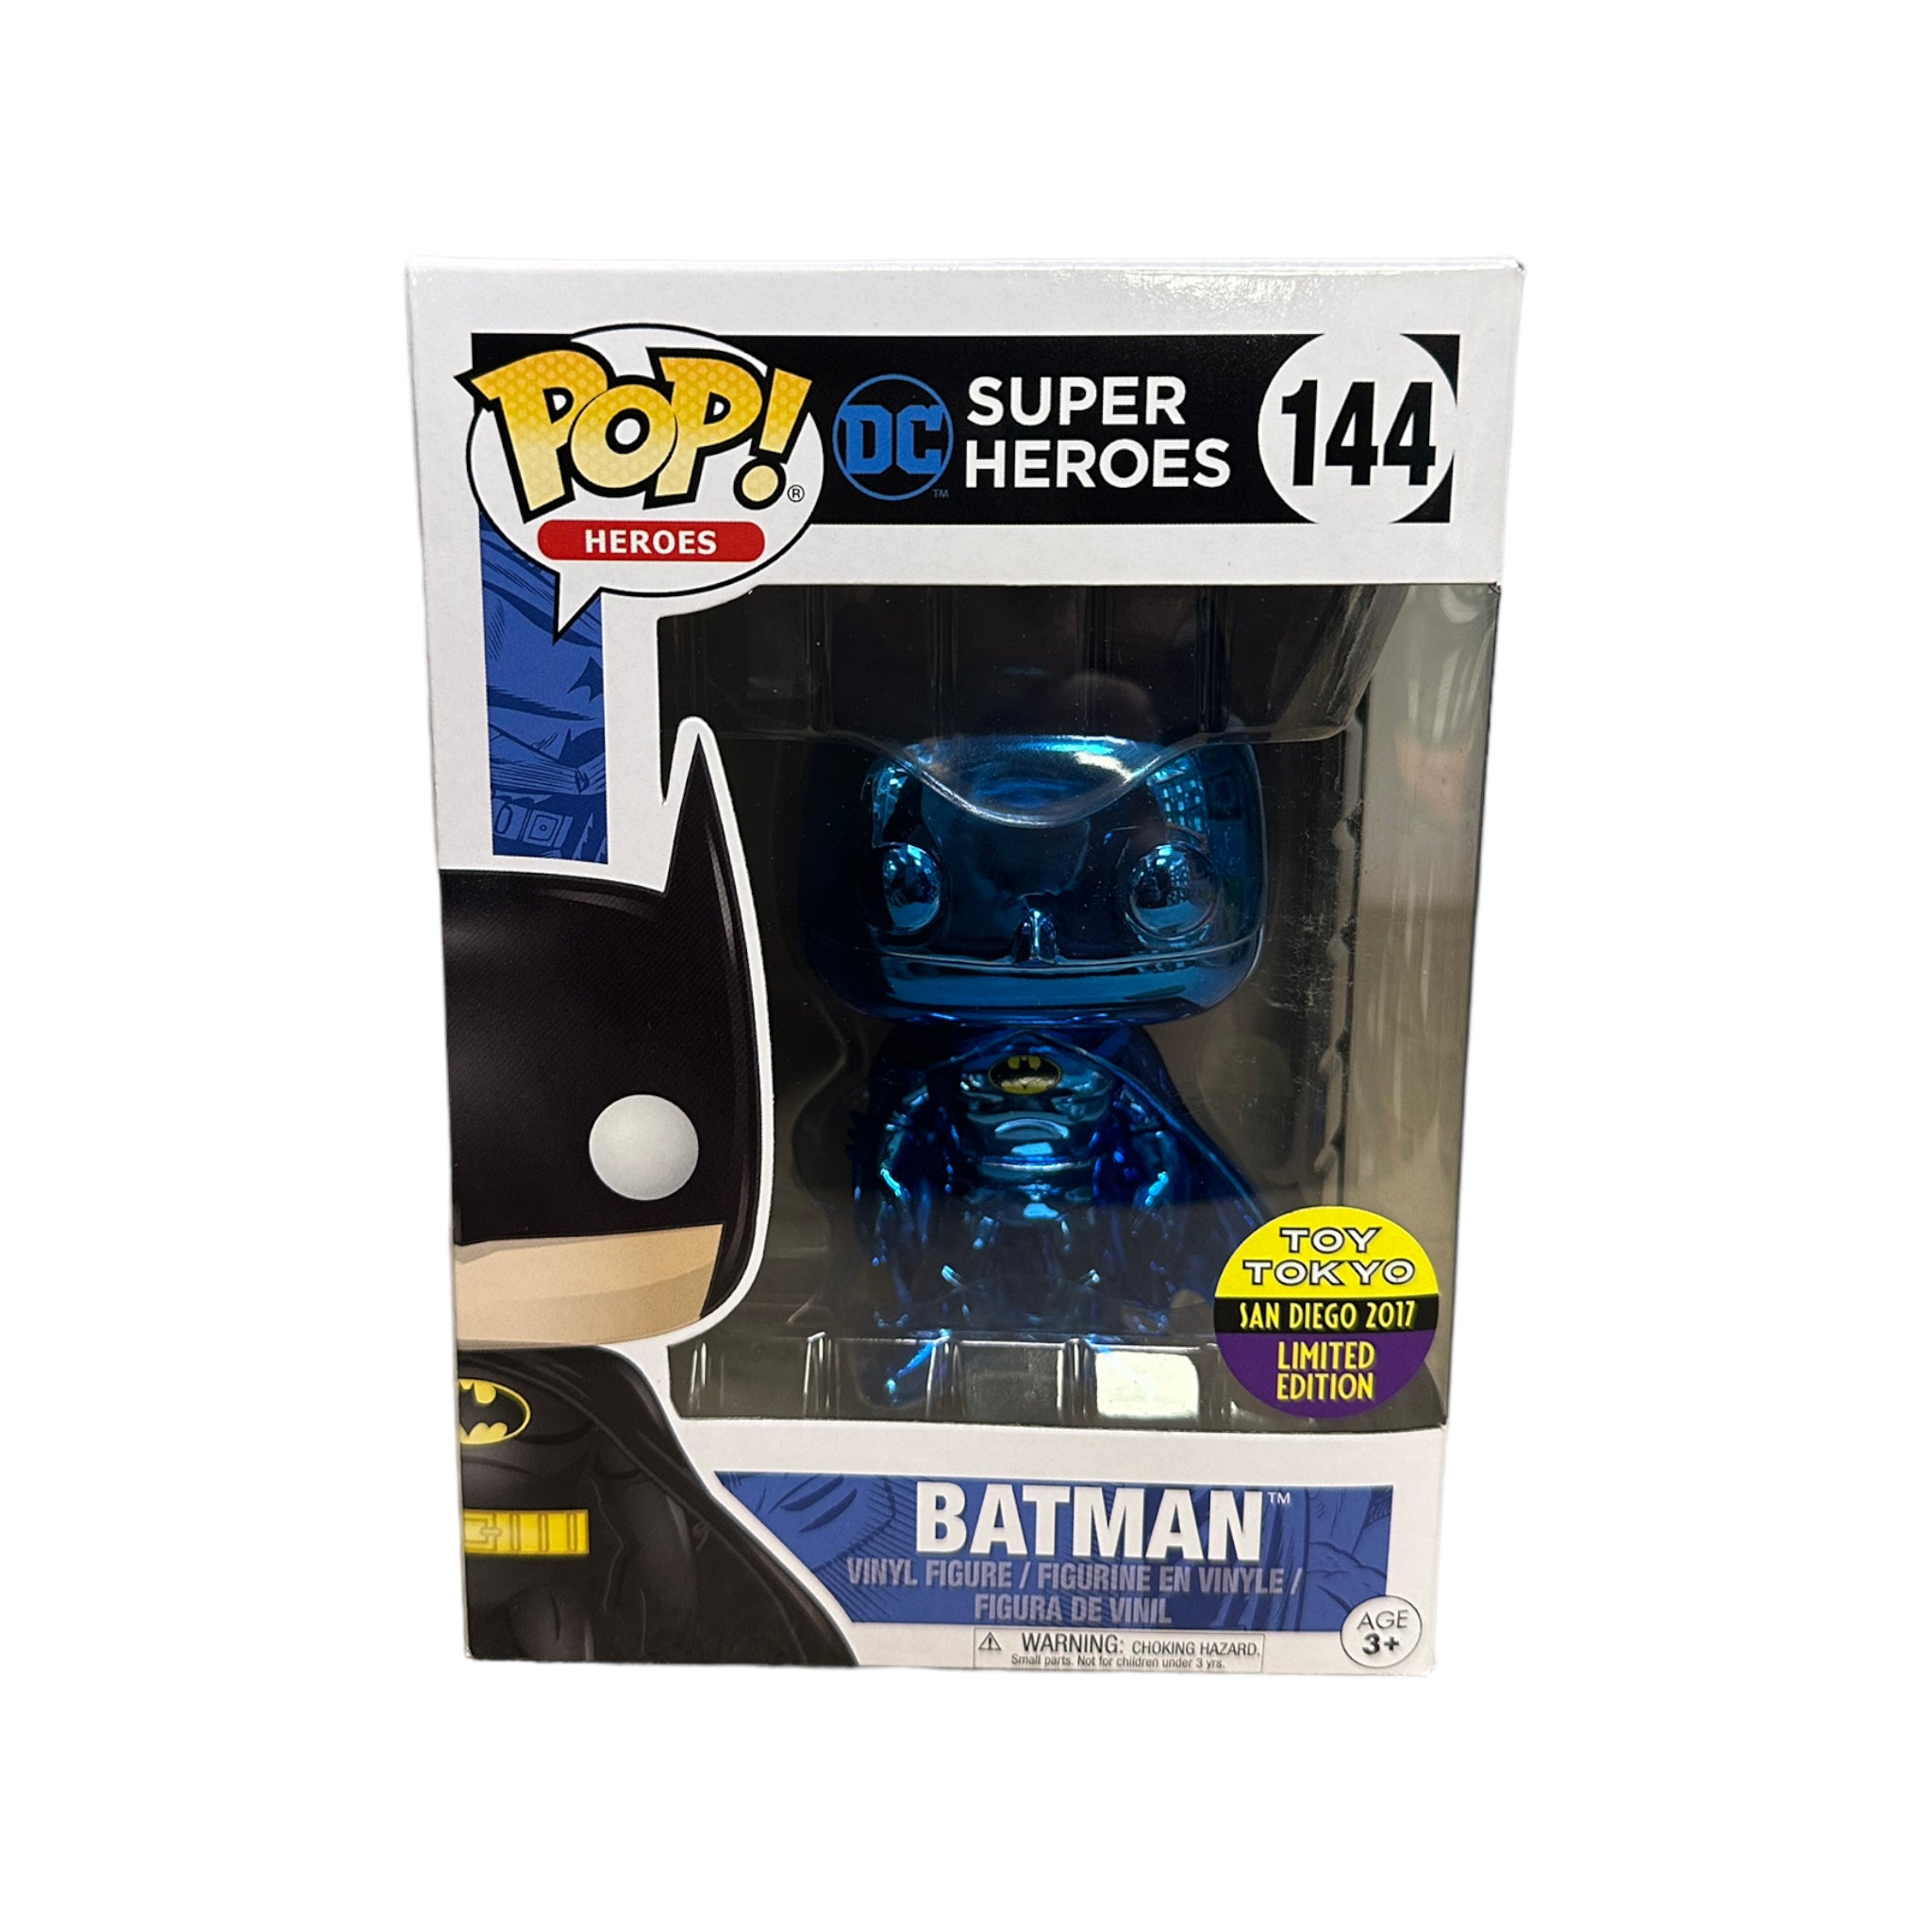 Batman #144 (Blue Chrome) Funko Pop! - DC Super Heroes - SDCC 2017 Toy Tokyo Exclusive - Condition 8.75/10